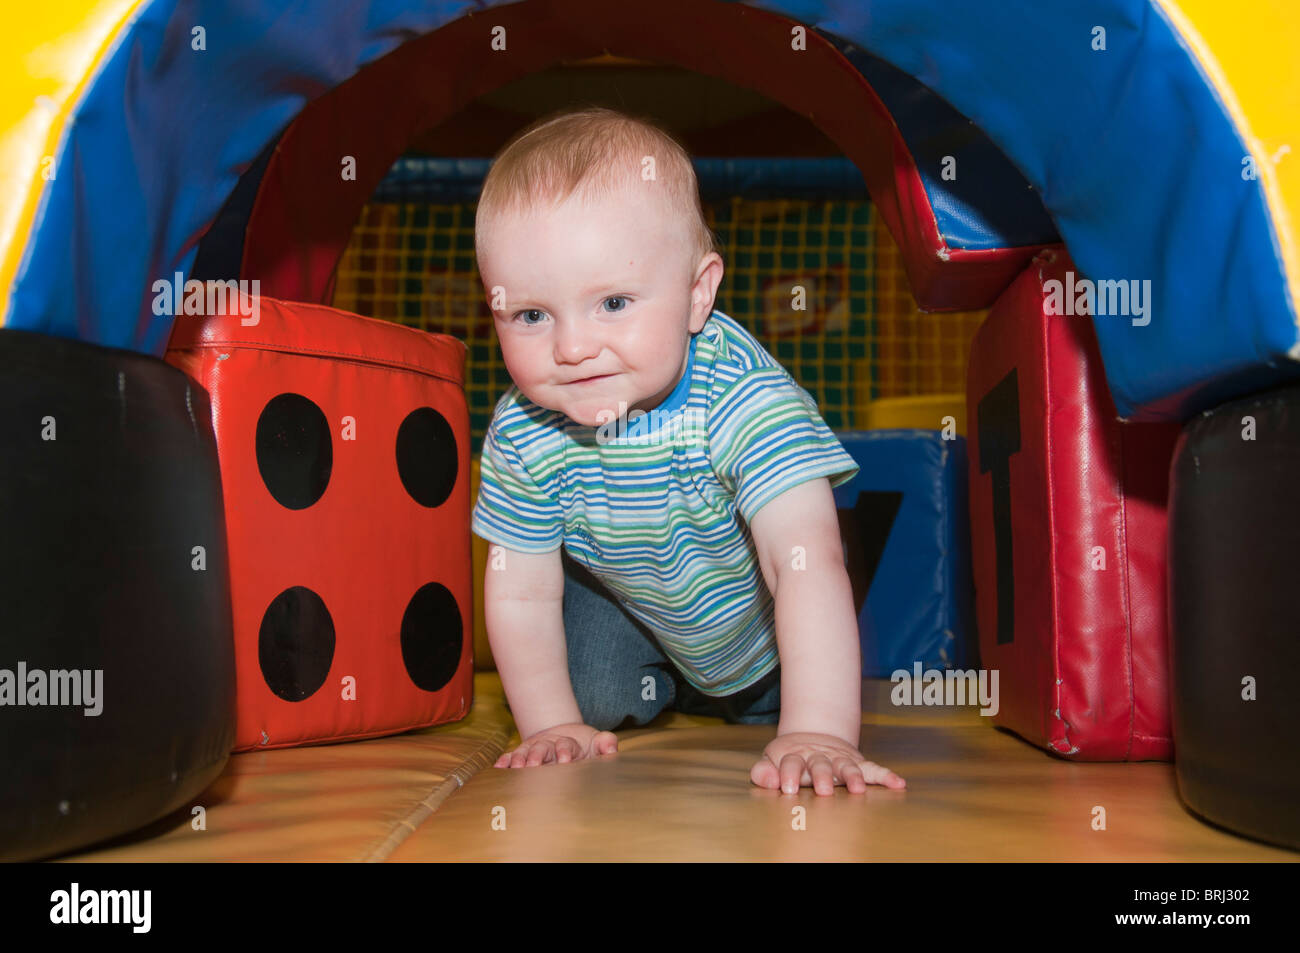 Bébé de 1 an ramper dans un tunnel de jeu Banque D'Images